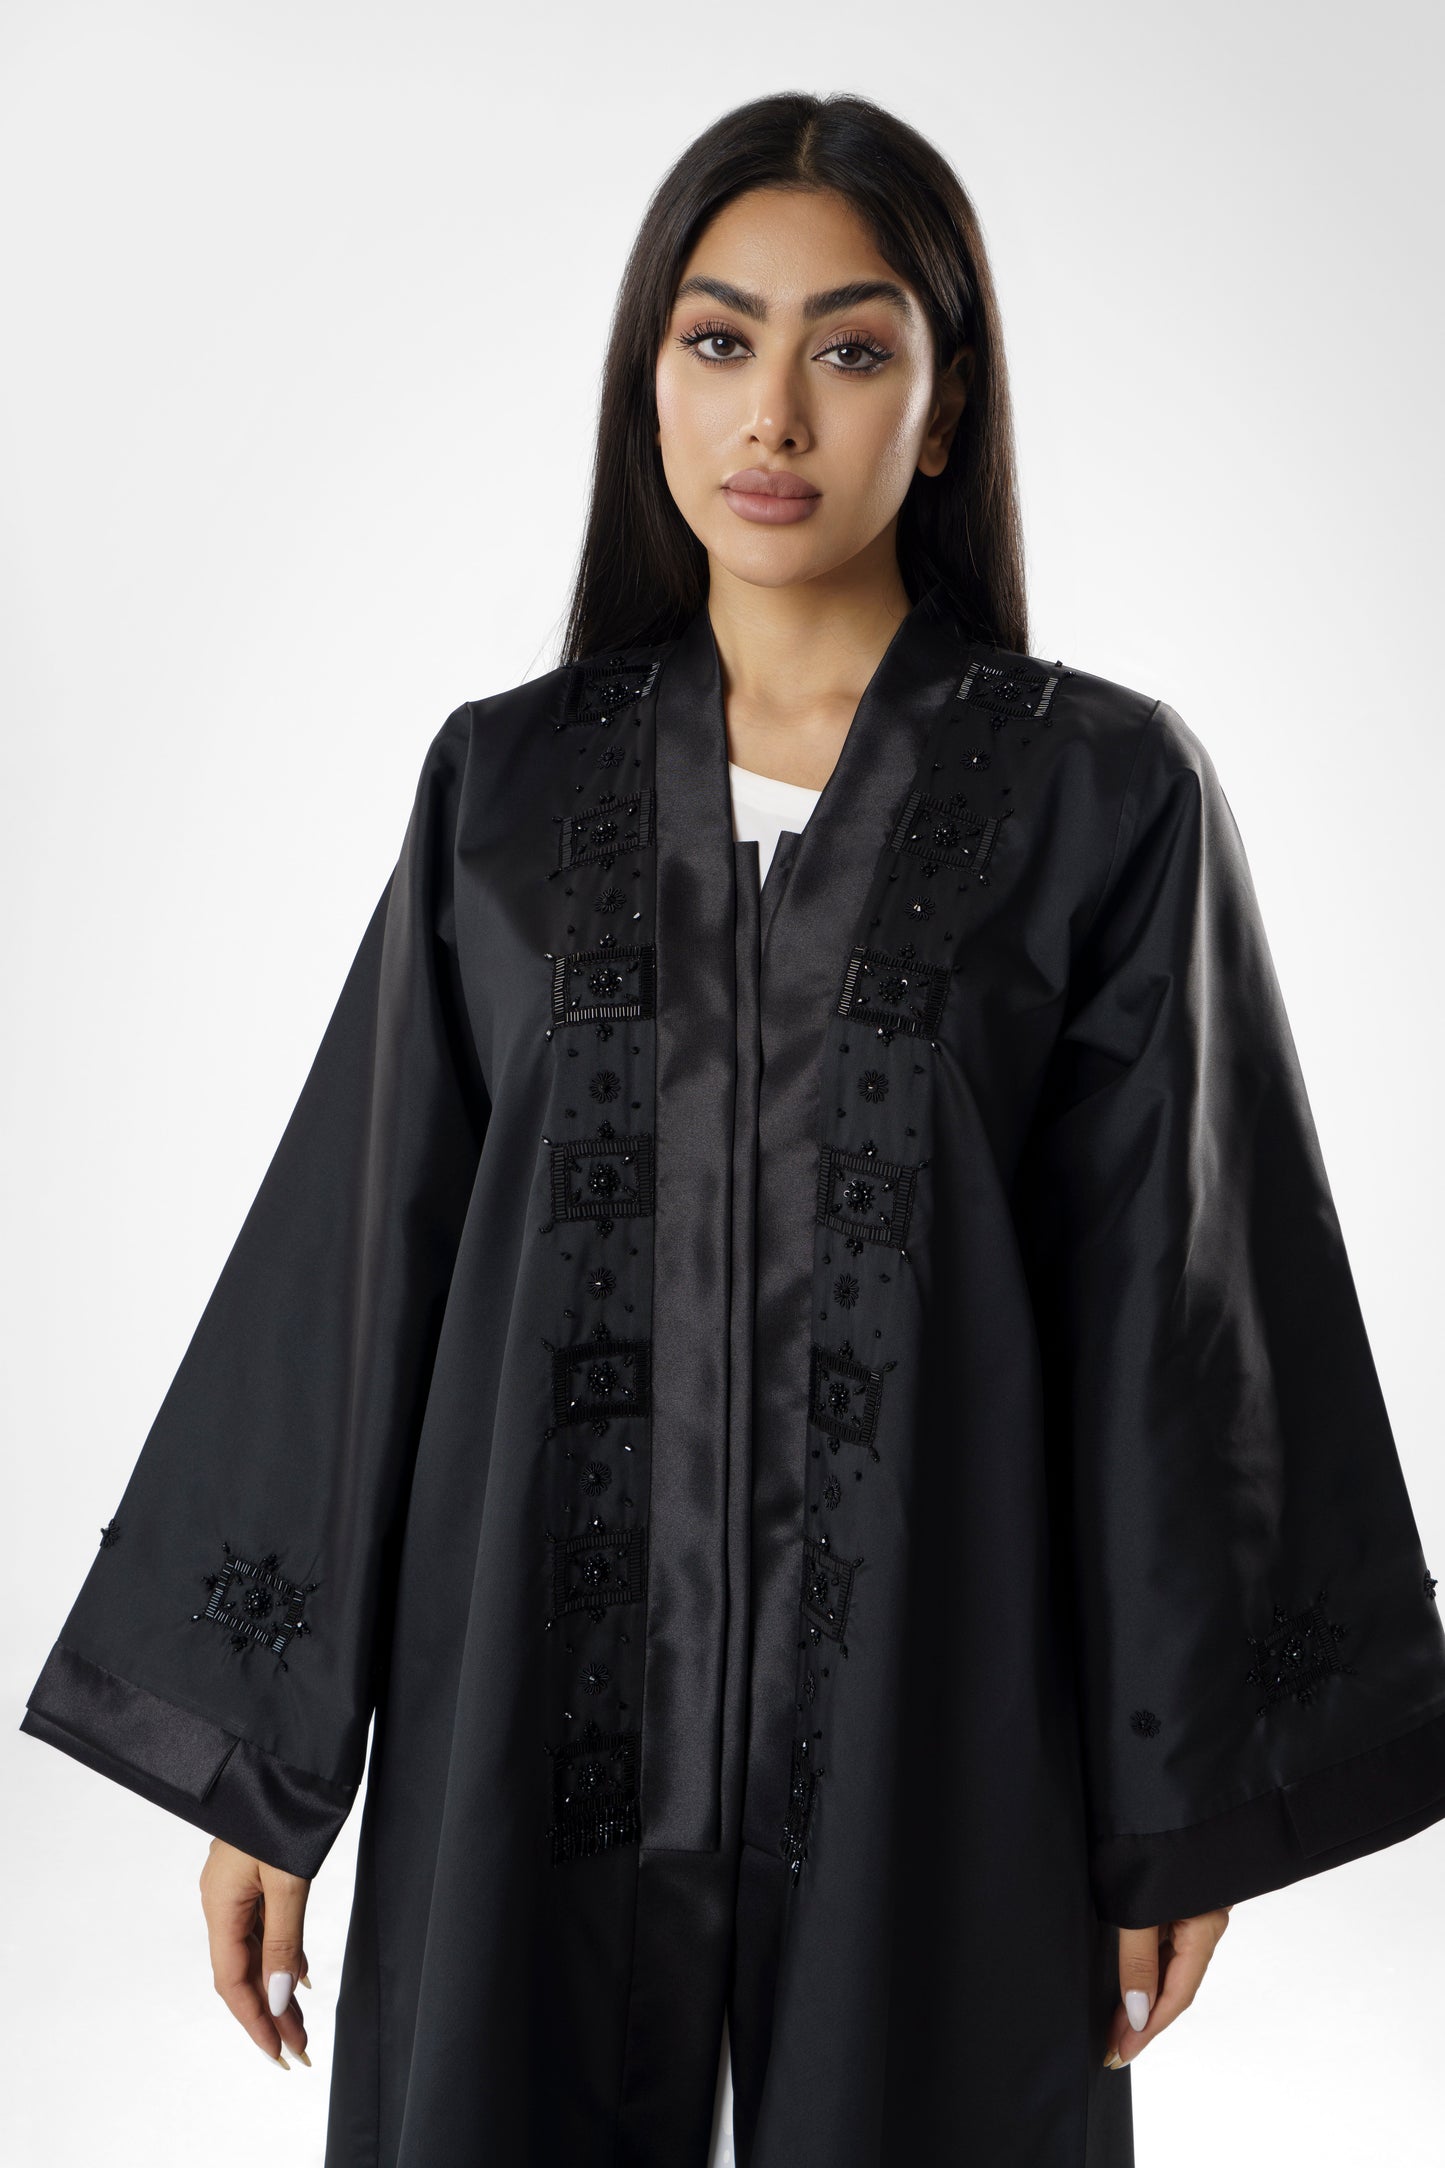 Elegant Embellished Black Abaya with Geometric Detailing